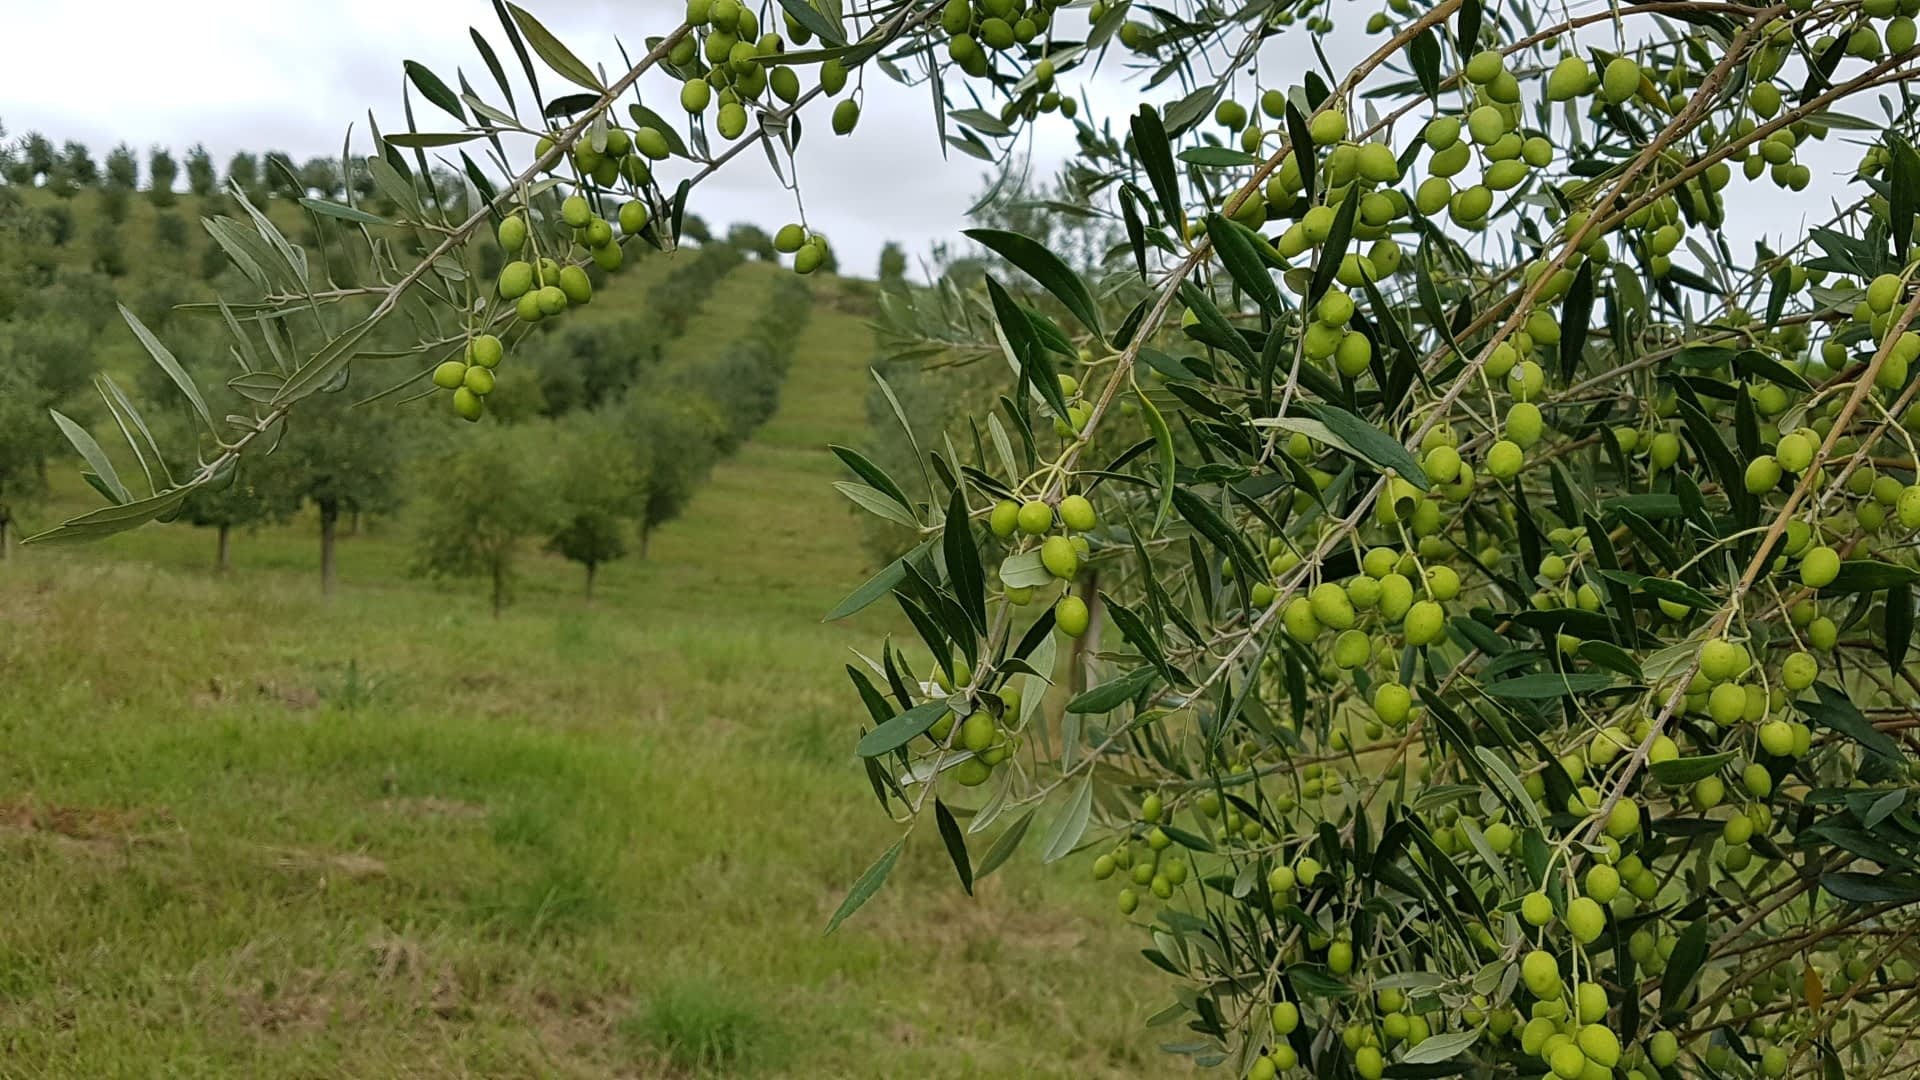 profils-production-amérique-du-sud-à-rio-grande-do-sul-la-production-primée-signifie-se-préparer-aux-temps-inattendus-de-l-huile-d-olive